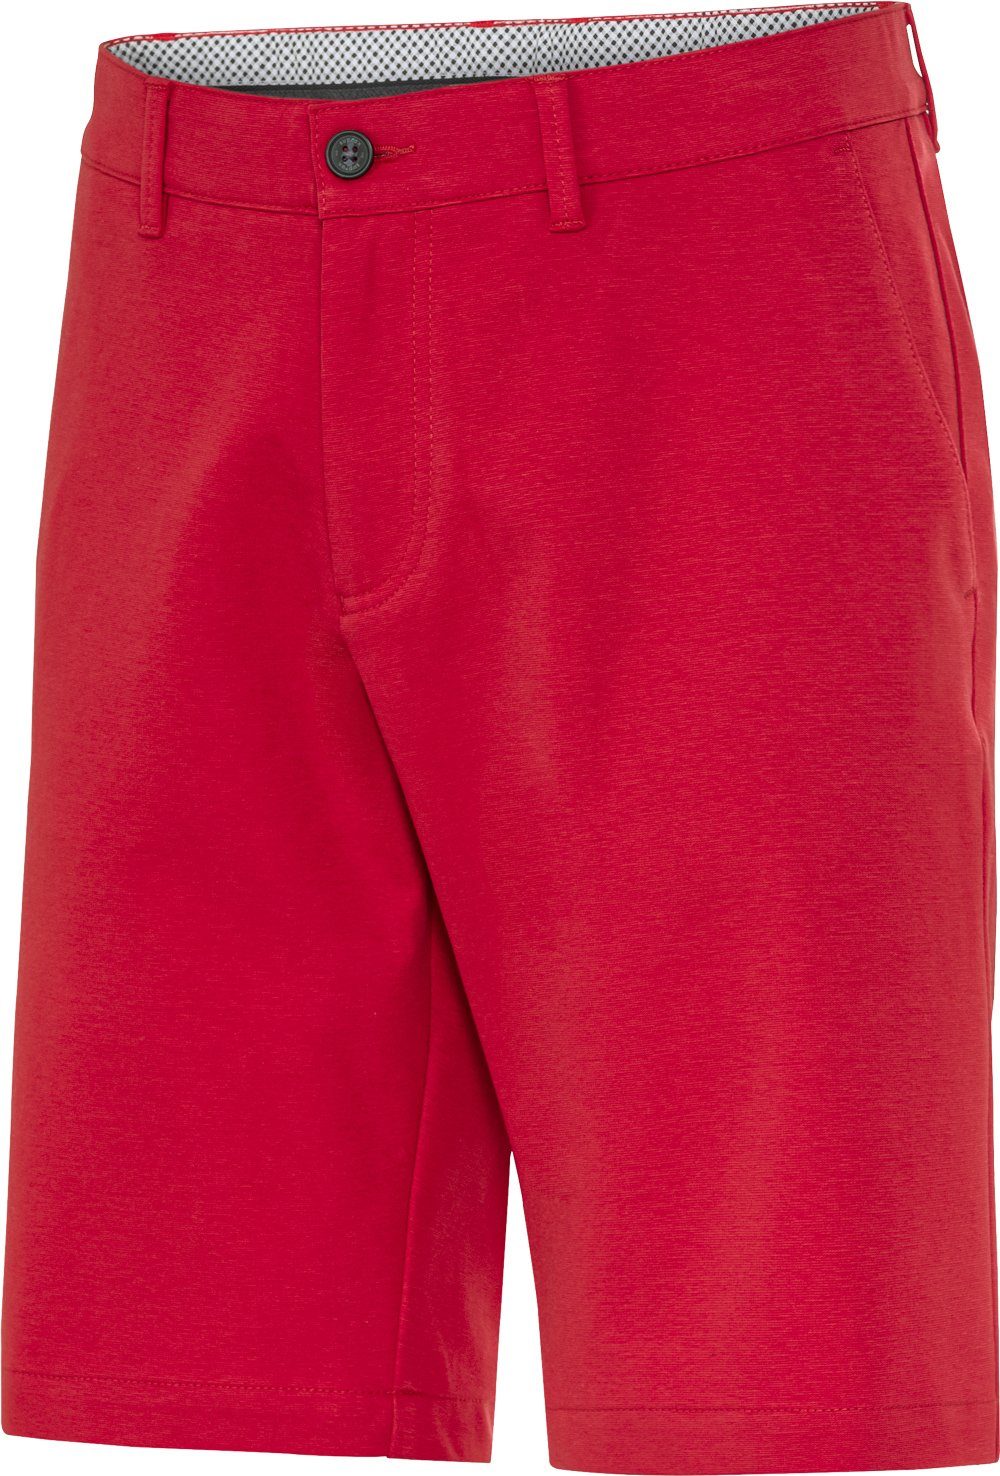 Suprax Bermudas faltenresistent, hochwertige Ausführung mit gemustertem Futter rot | Shorts